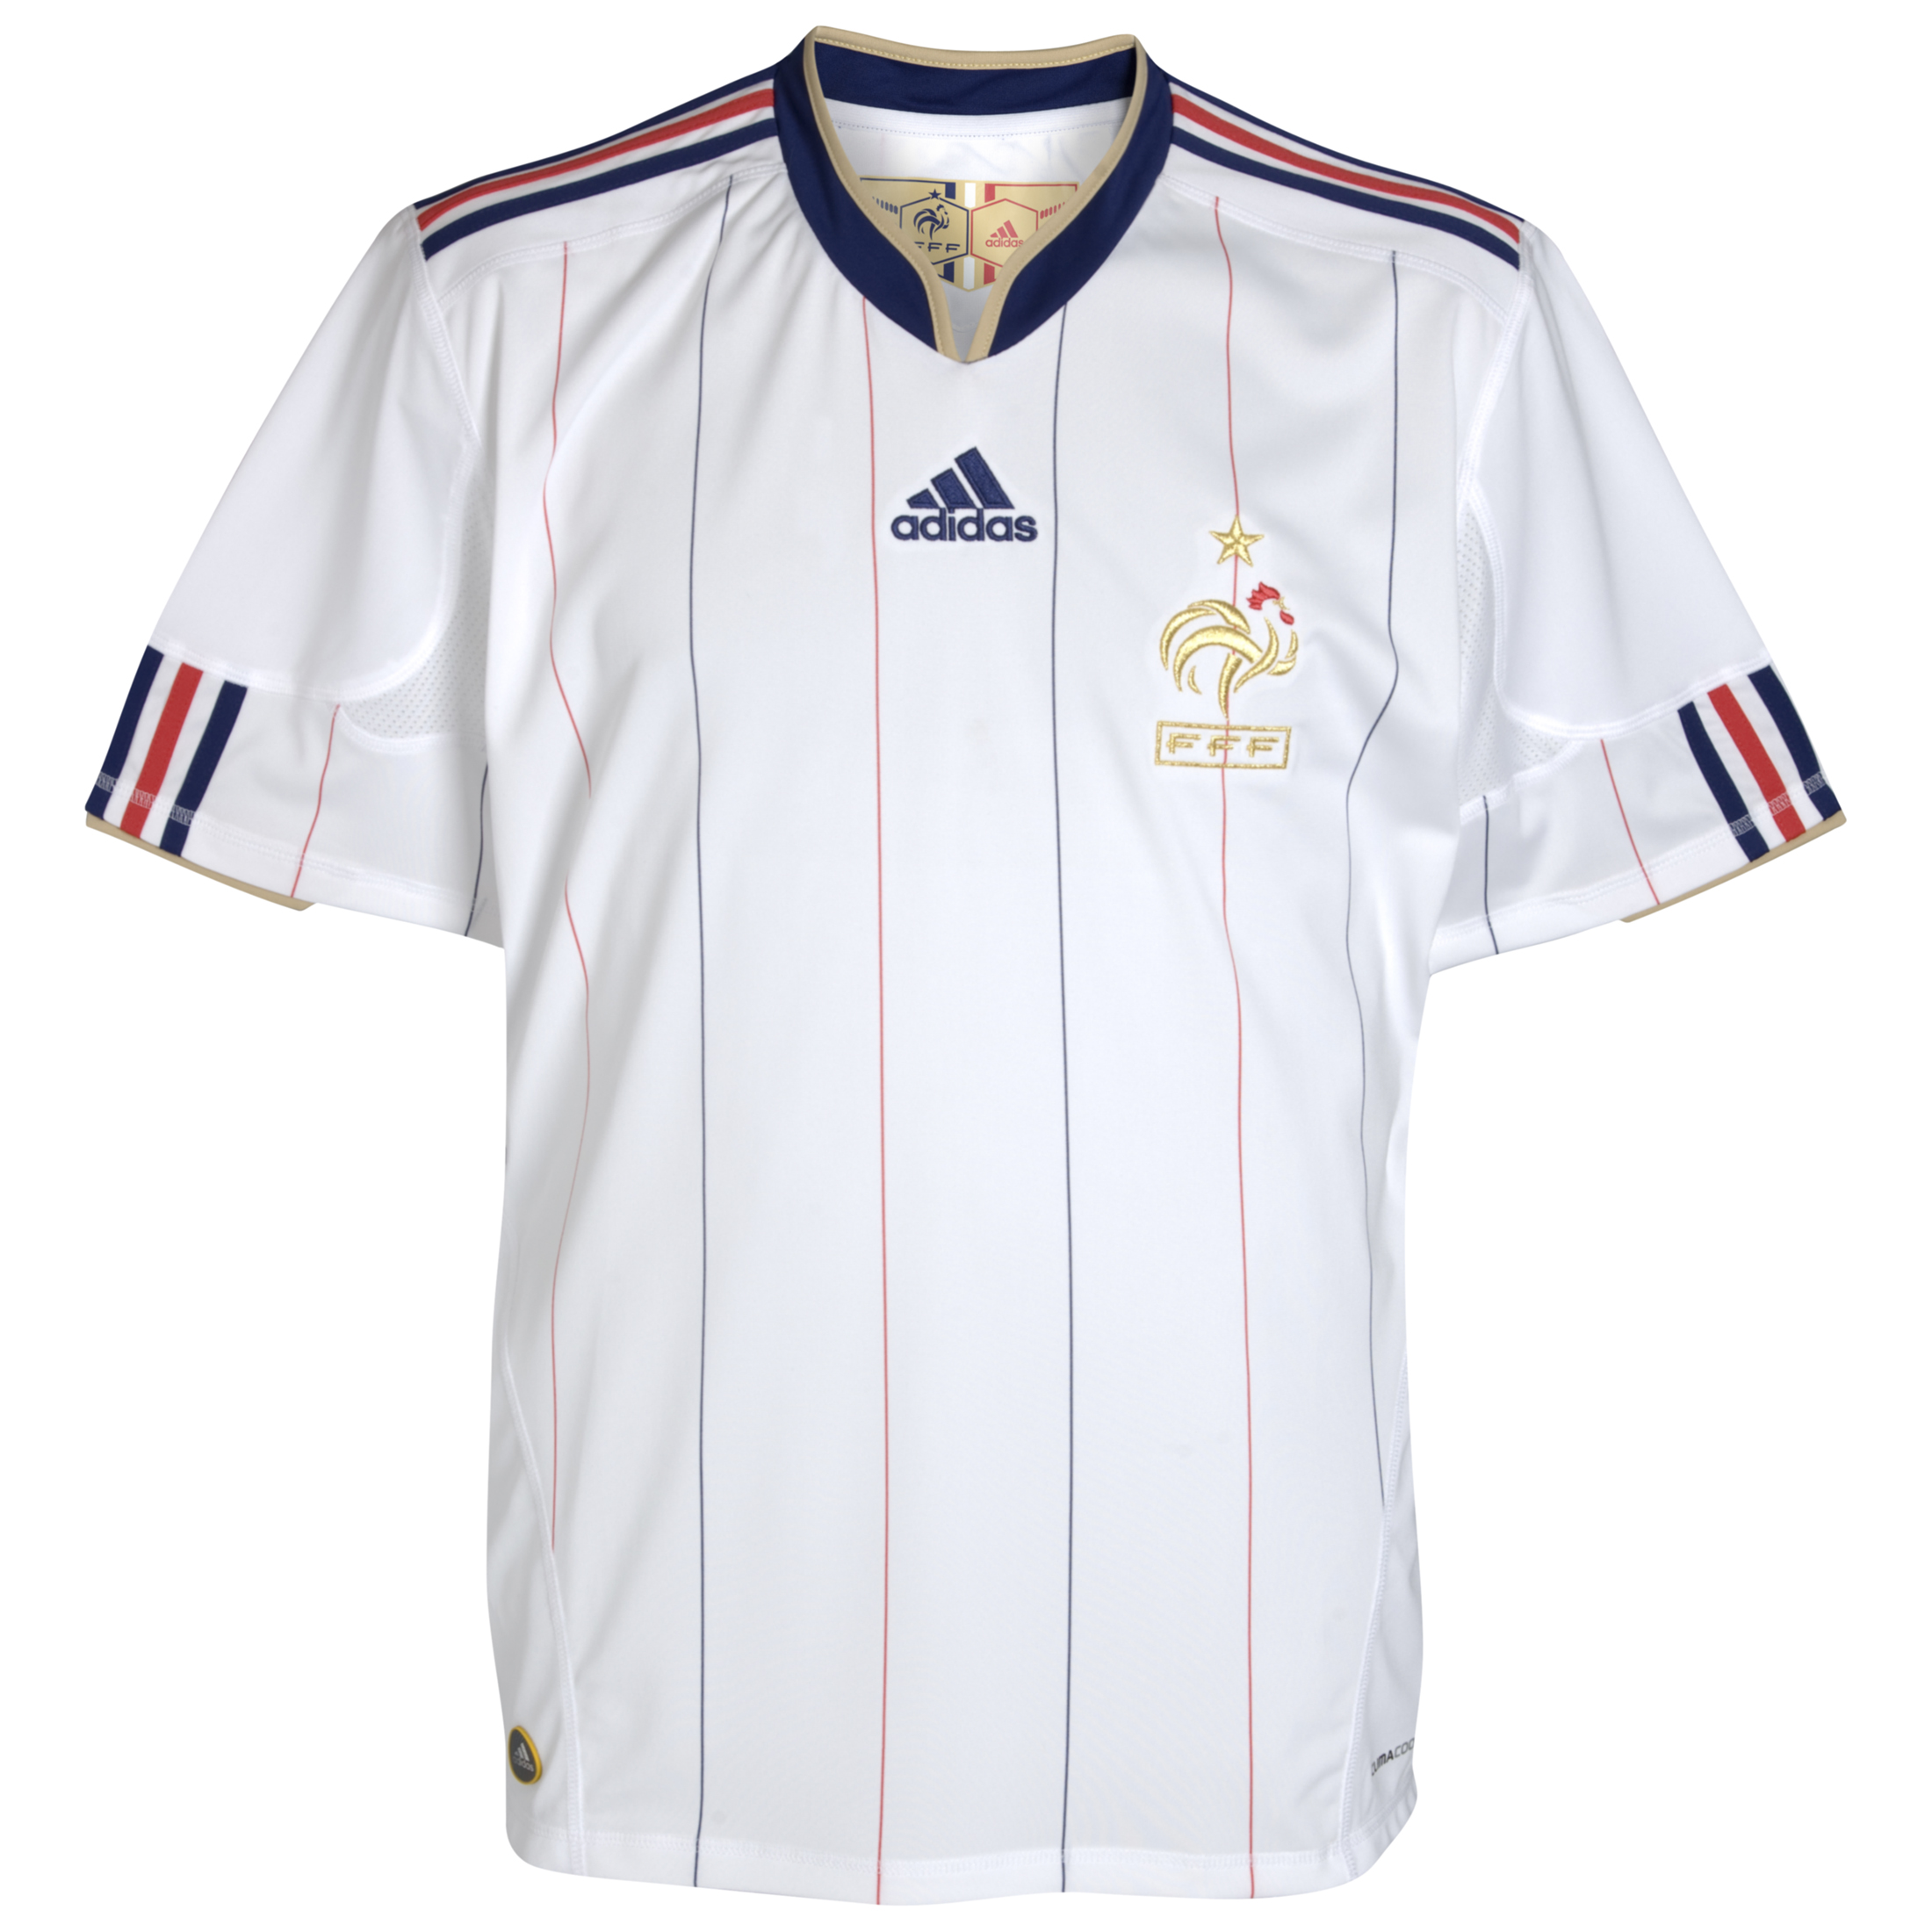 ملابس المنتخبات في كأس العالم 2010 Kb-66928